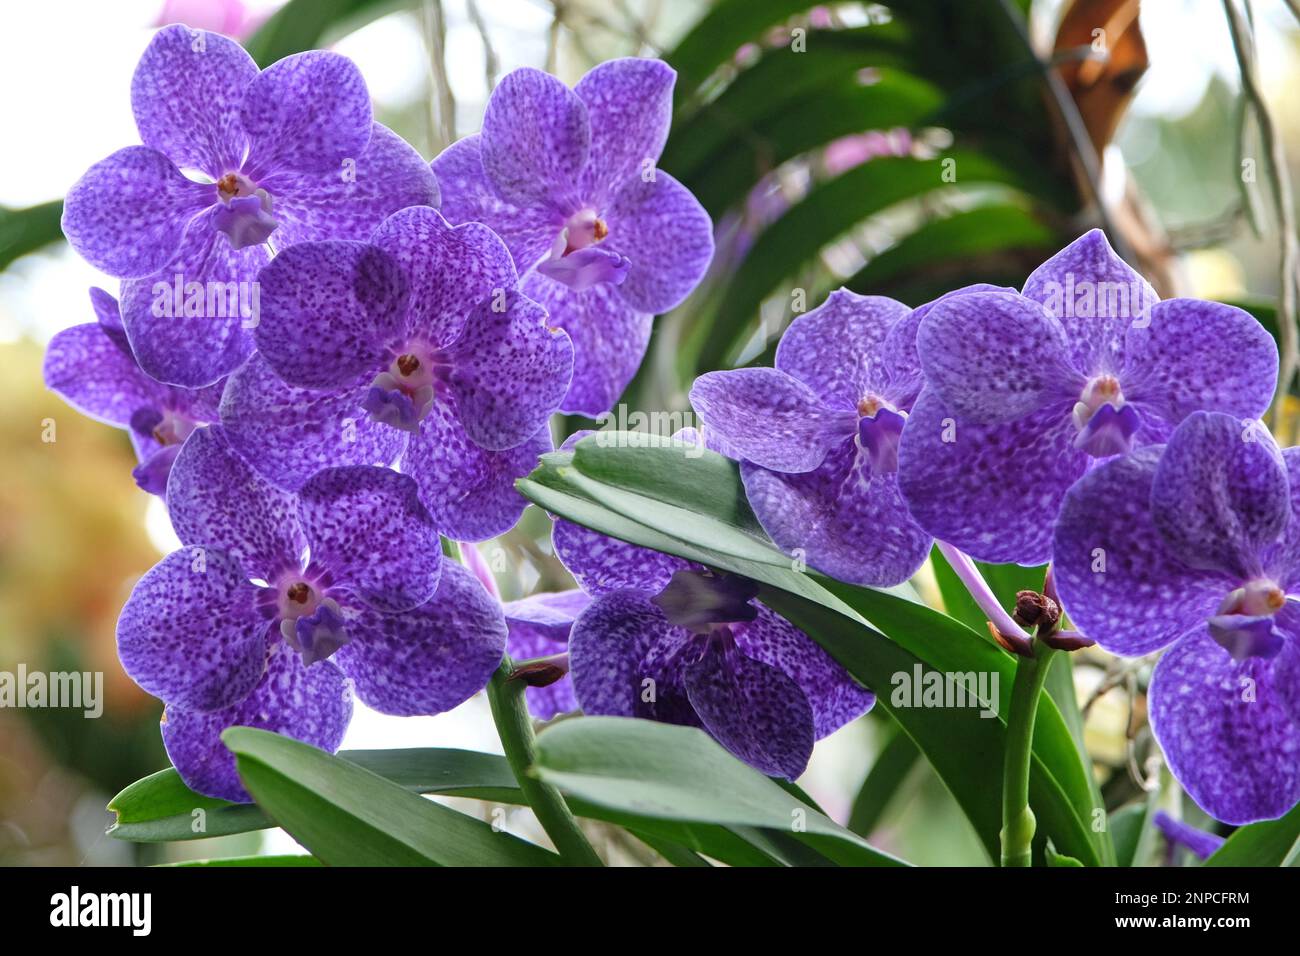 Blue mottled vanda orchids in flower. Stock Photo